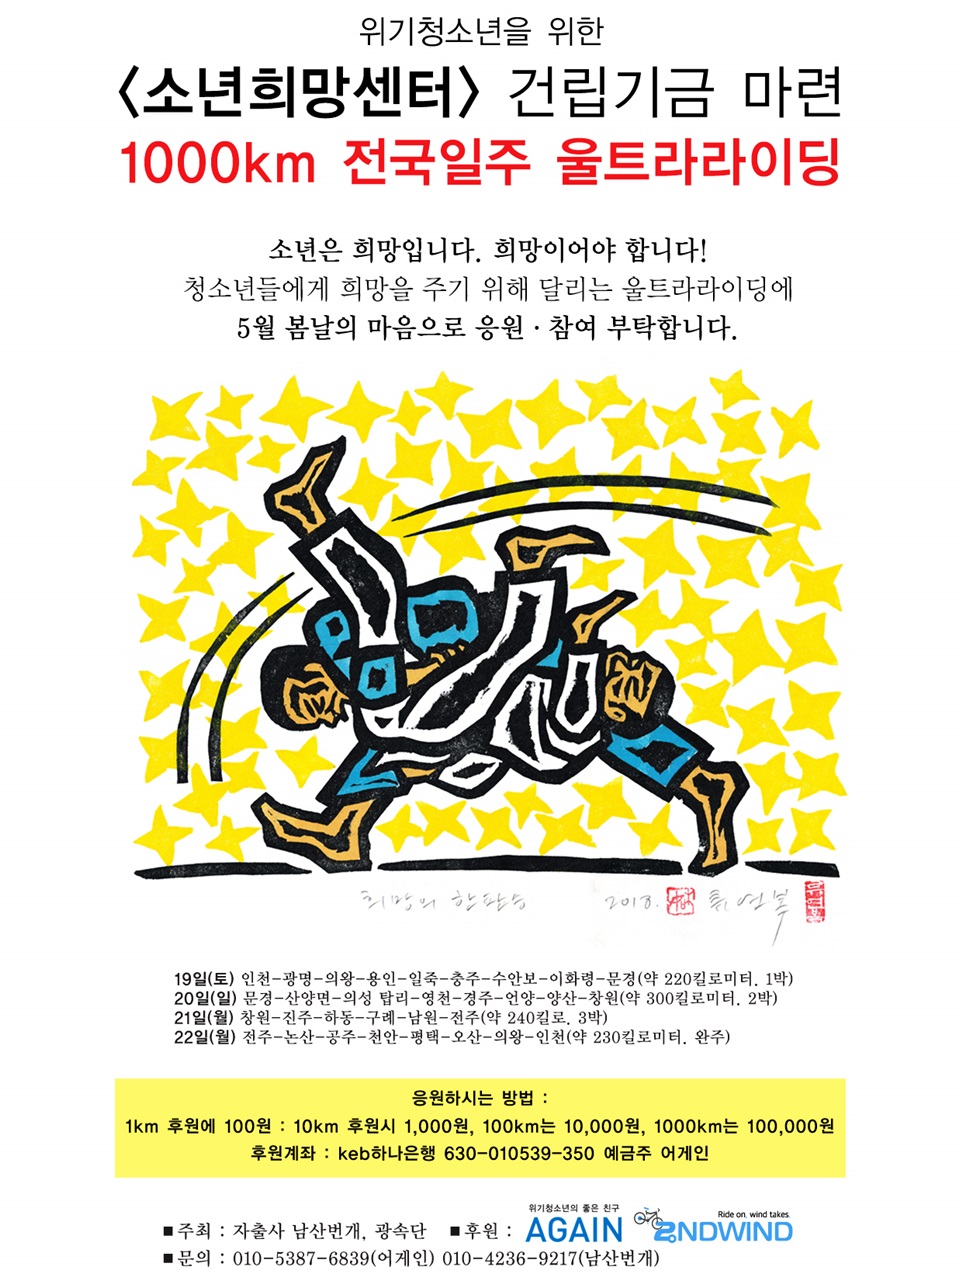  소년희망센터 건립기금 마련을 위한 1천km 전국일주 울트라 라이딩 포스터. 